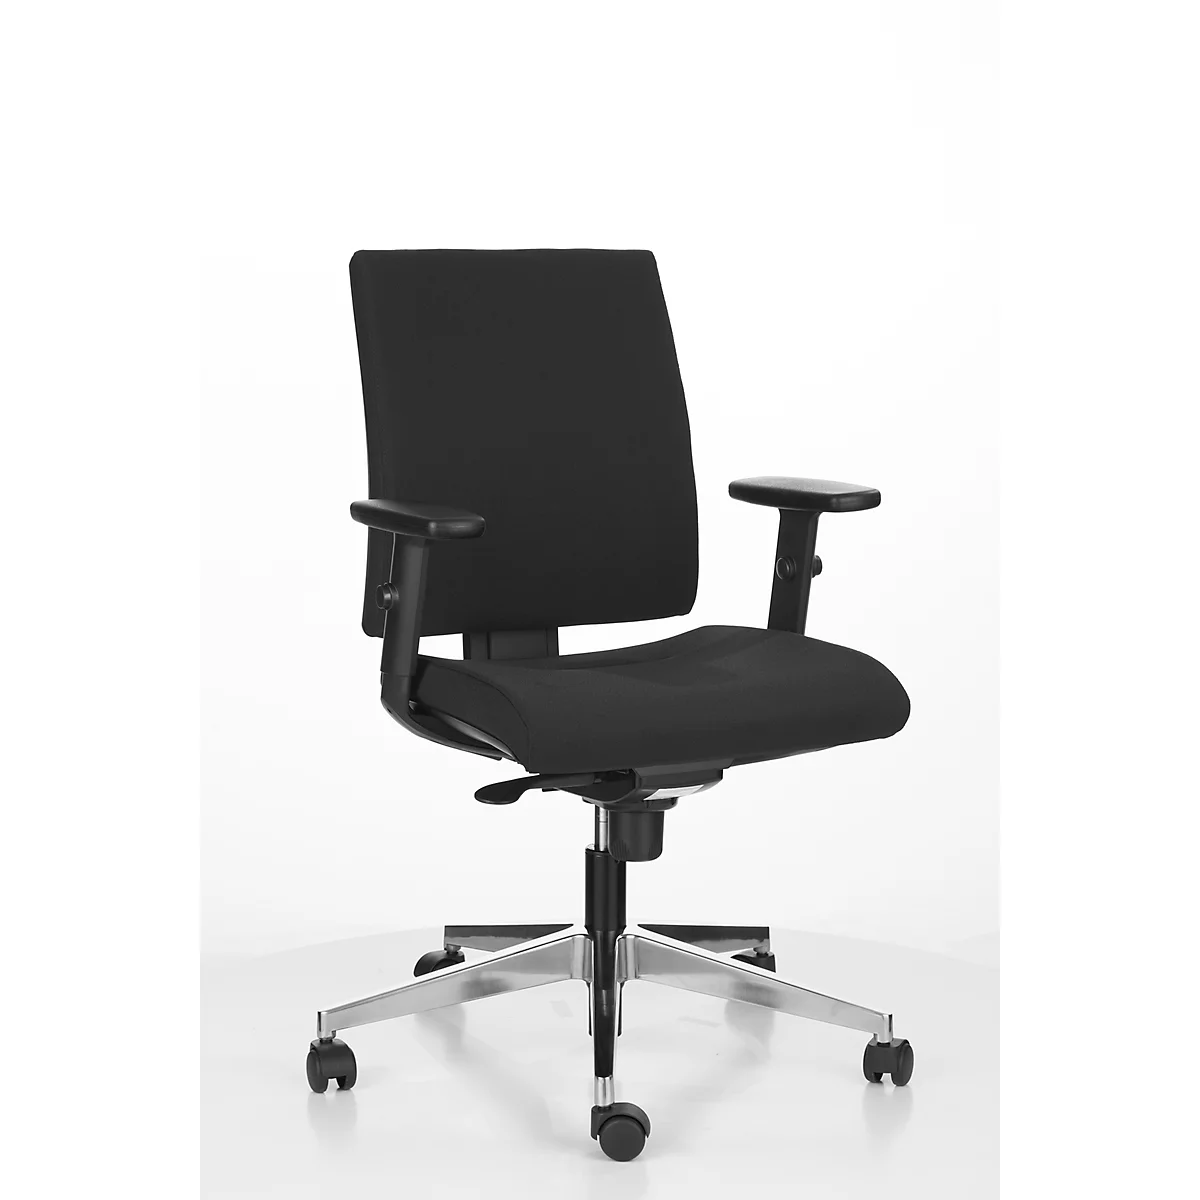 Bürostuhl INTRATA, Synchronmechanik, ohne Armlehnen, Muldensitz mit Knierolle, bis 110 kg, Aluminium, schwarz